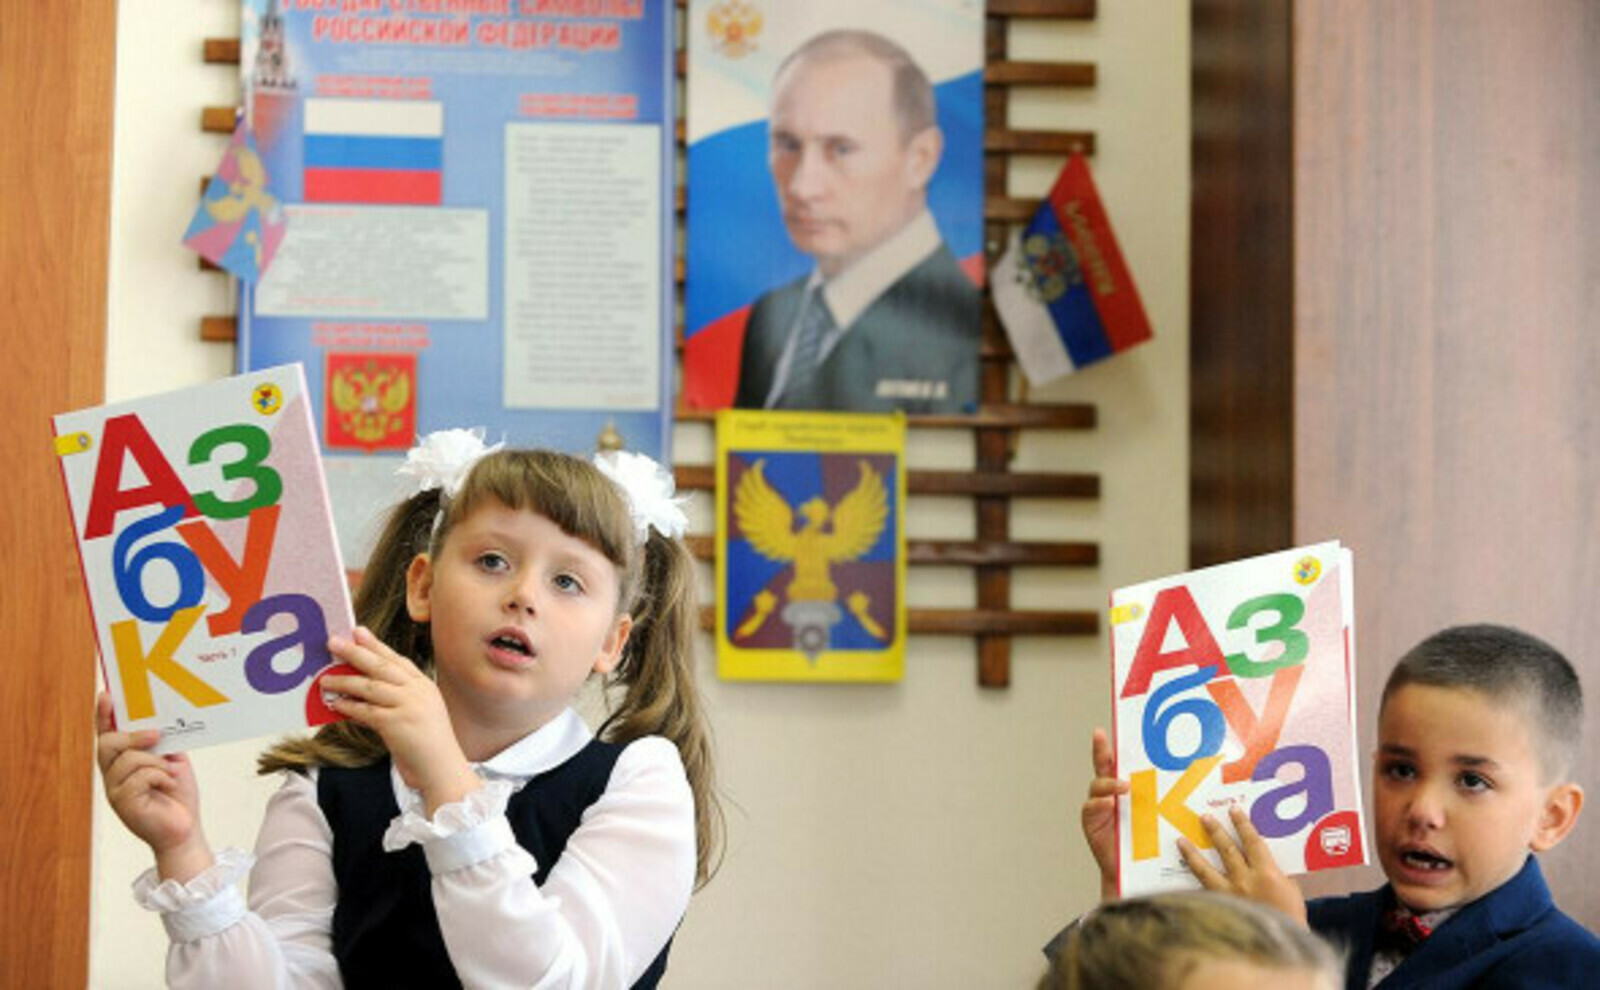 Путин 1 сентября проведет открытый урок «о важном»